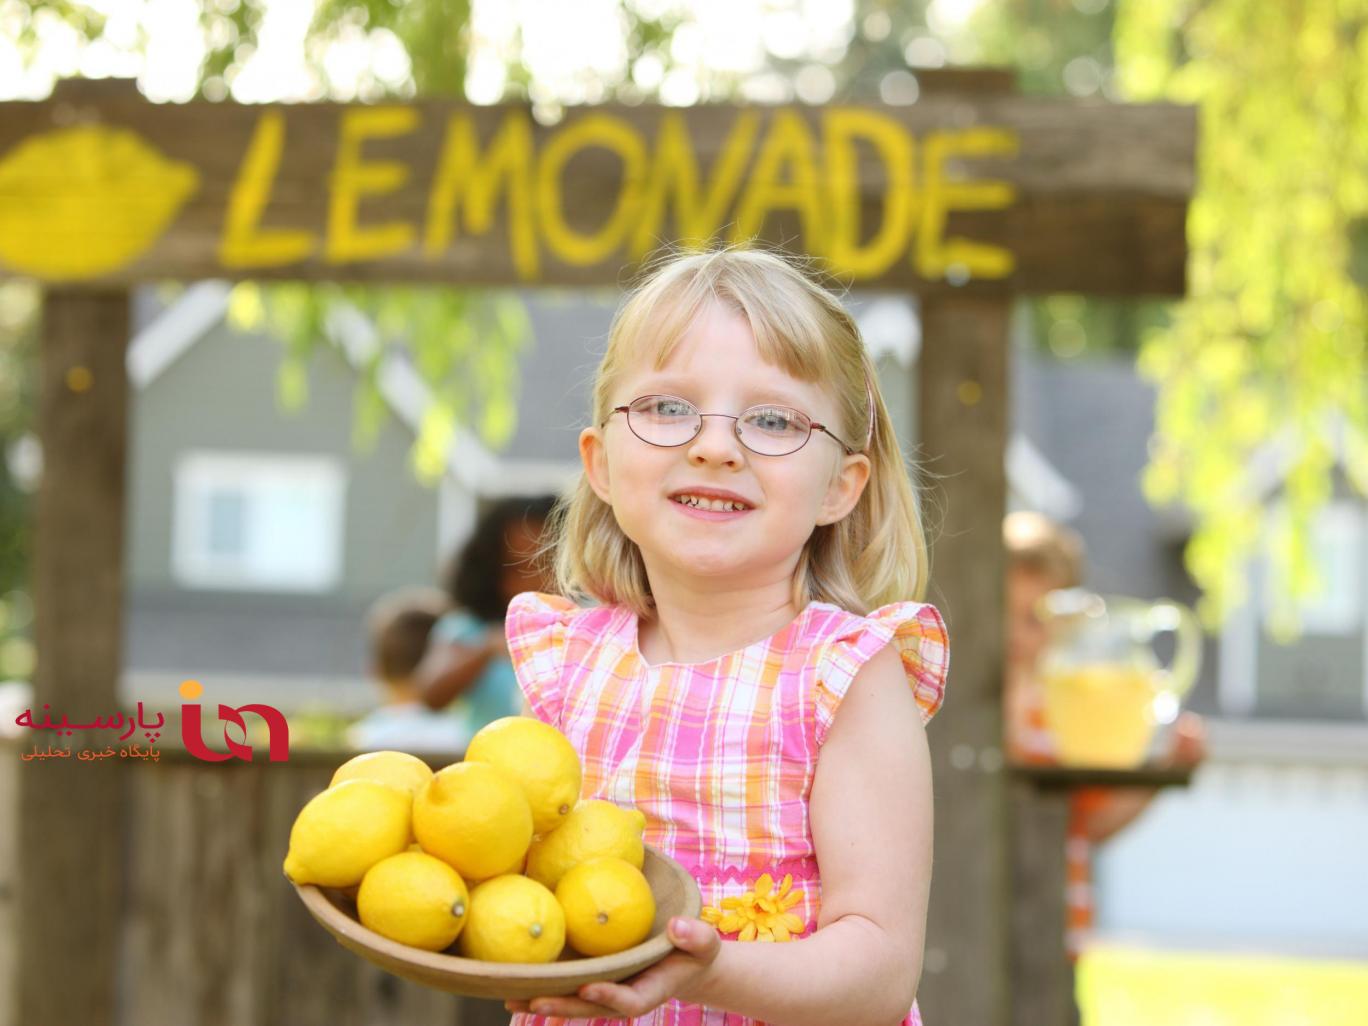 پیشنهاد فراوان کار به دختر ۵ ساله لیموناد فروش